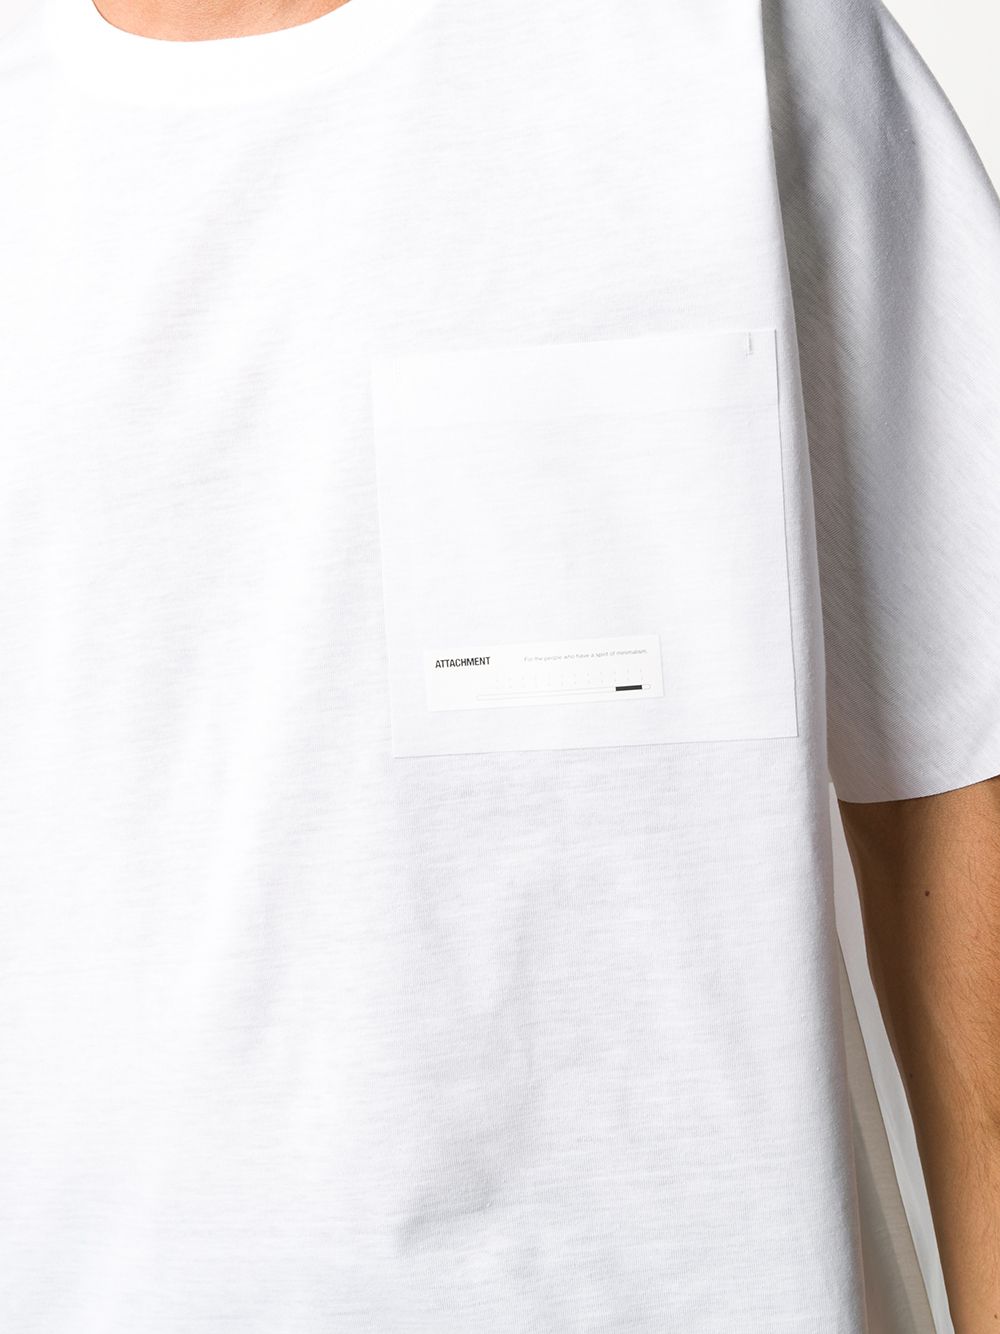 фото Attachment футболка с карманом и логотипом